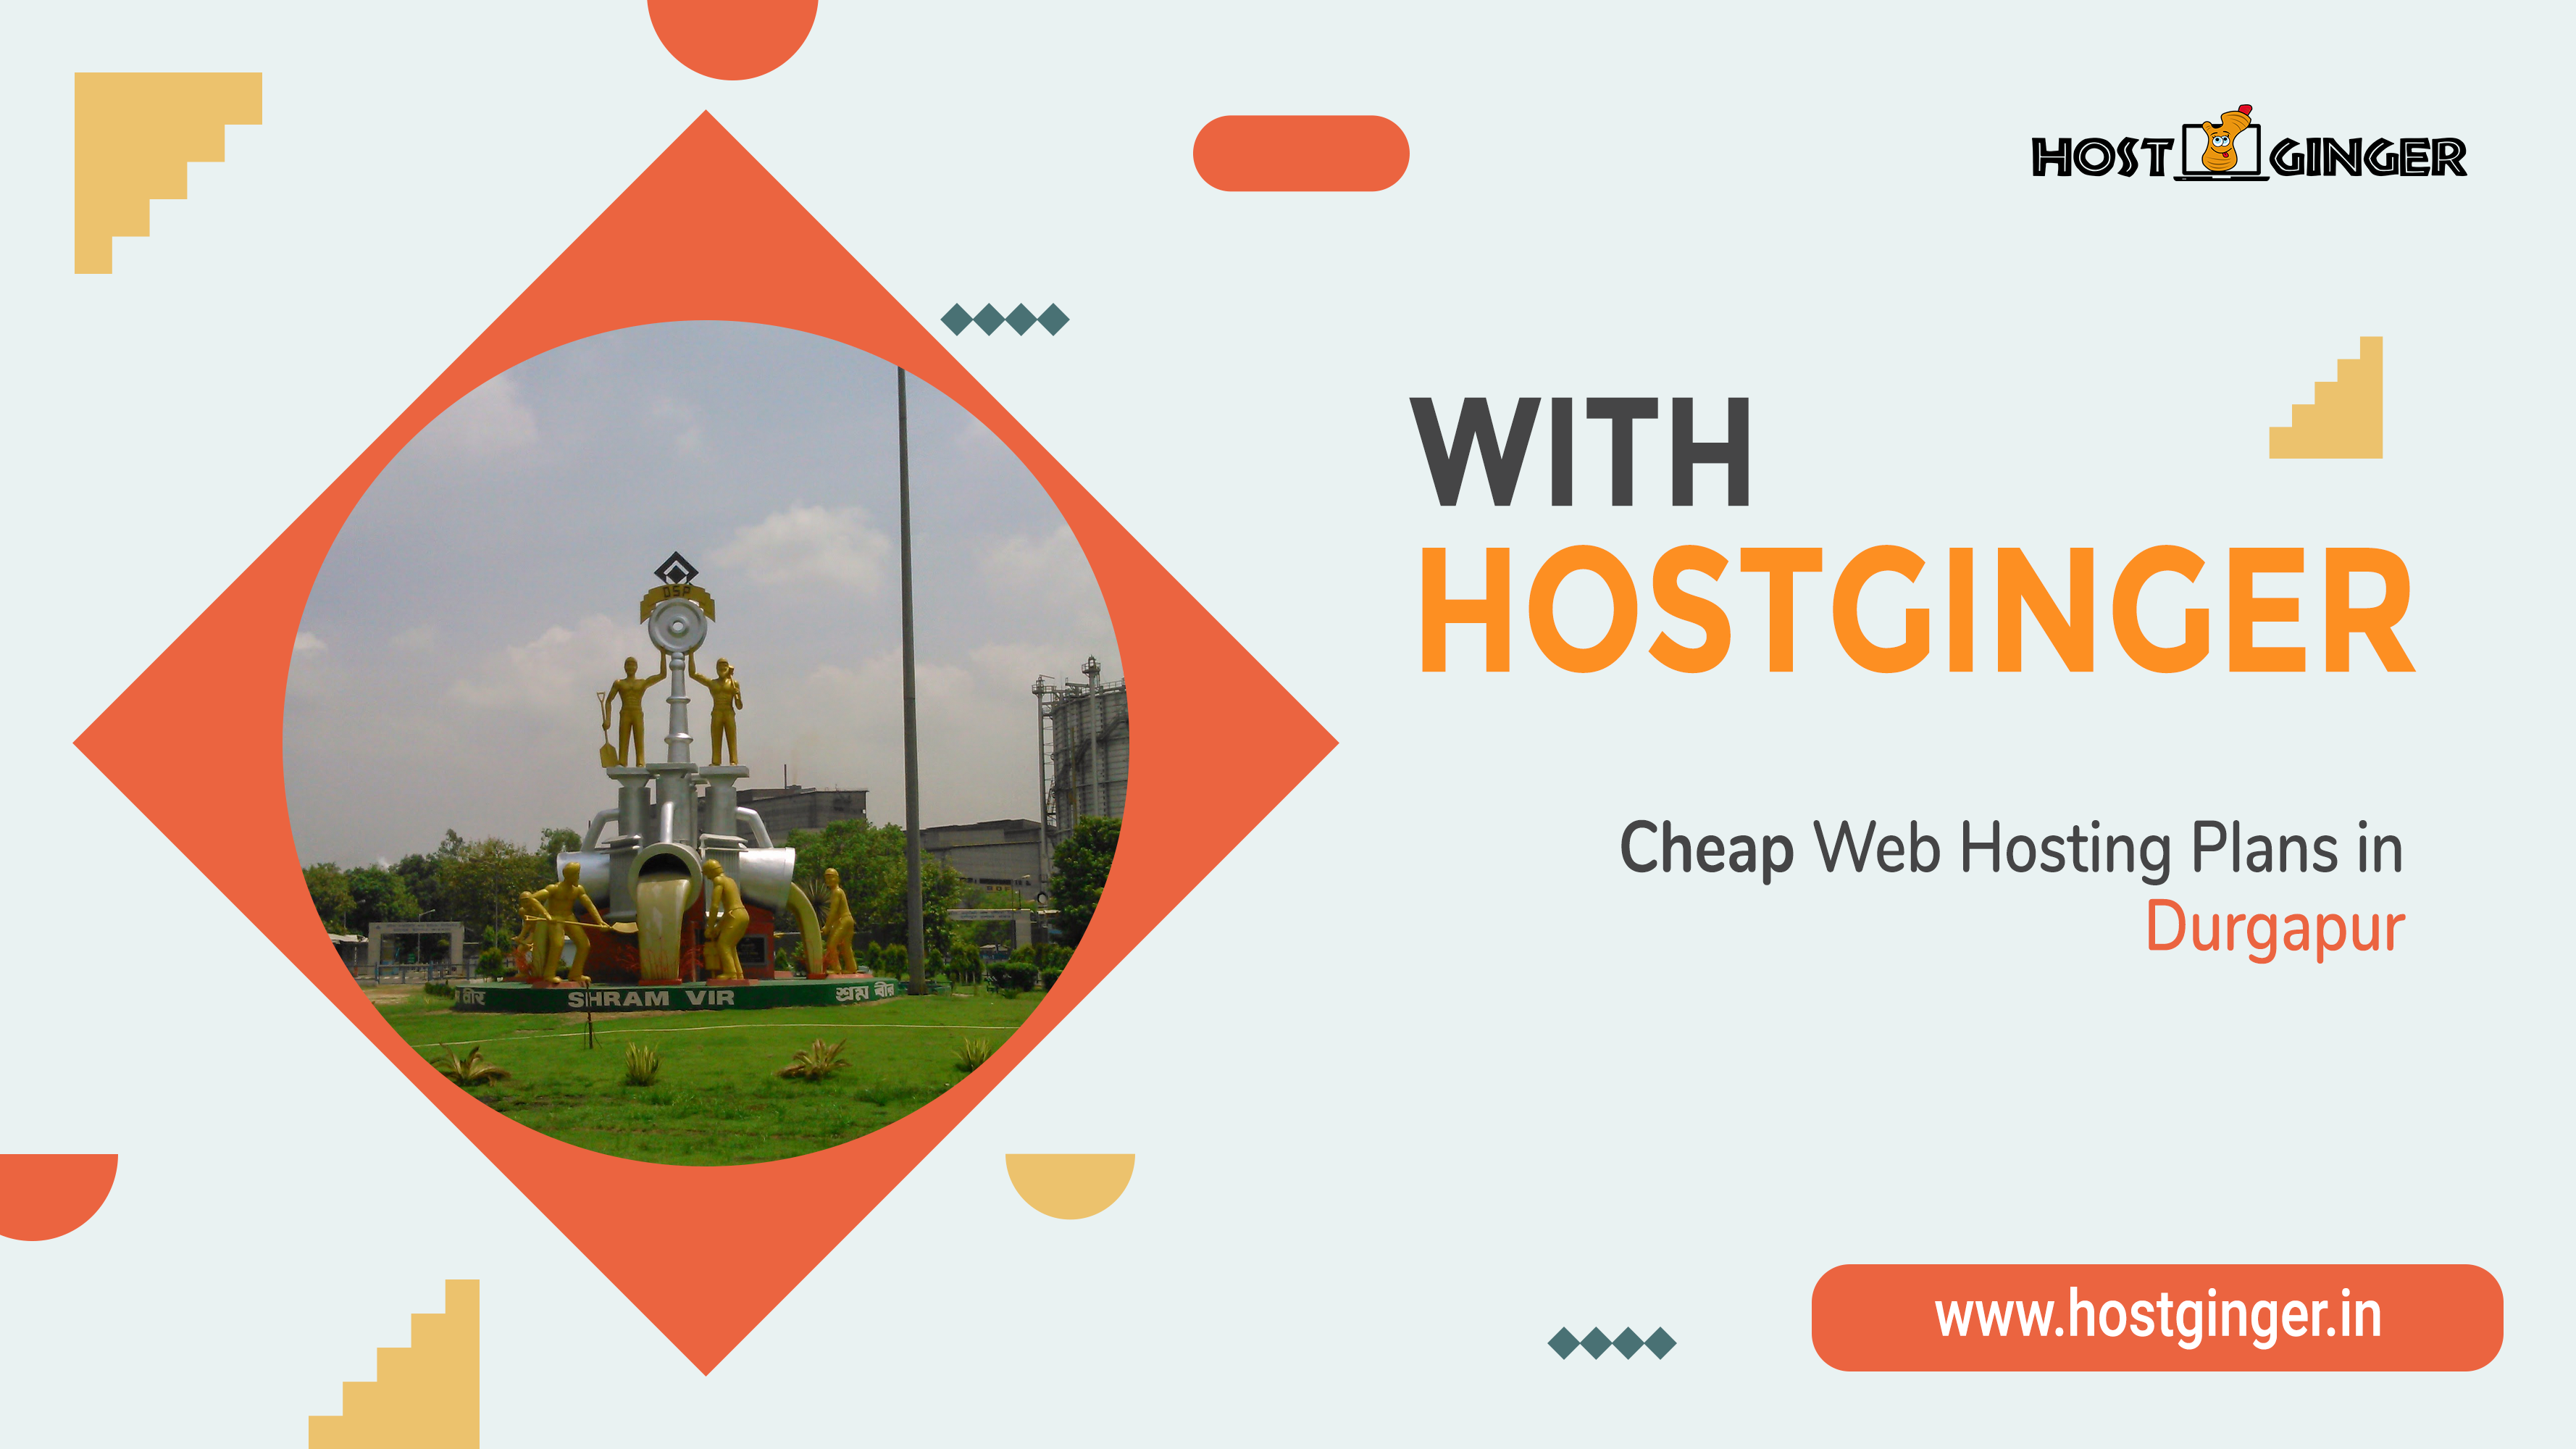 Affordable Web Hosting Plans in Durgapur